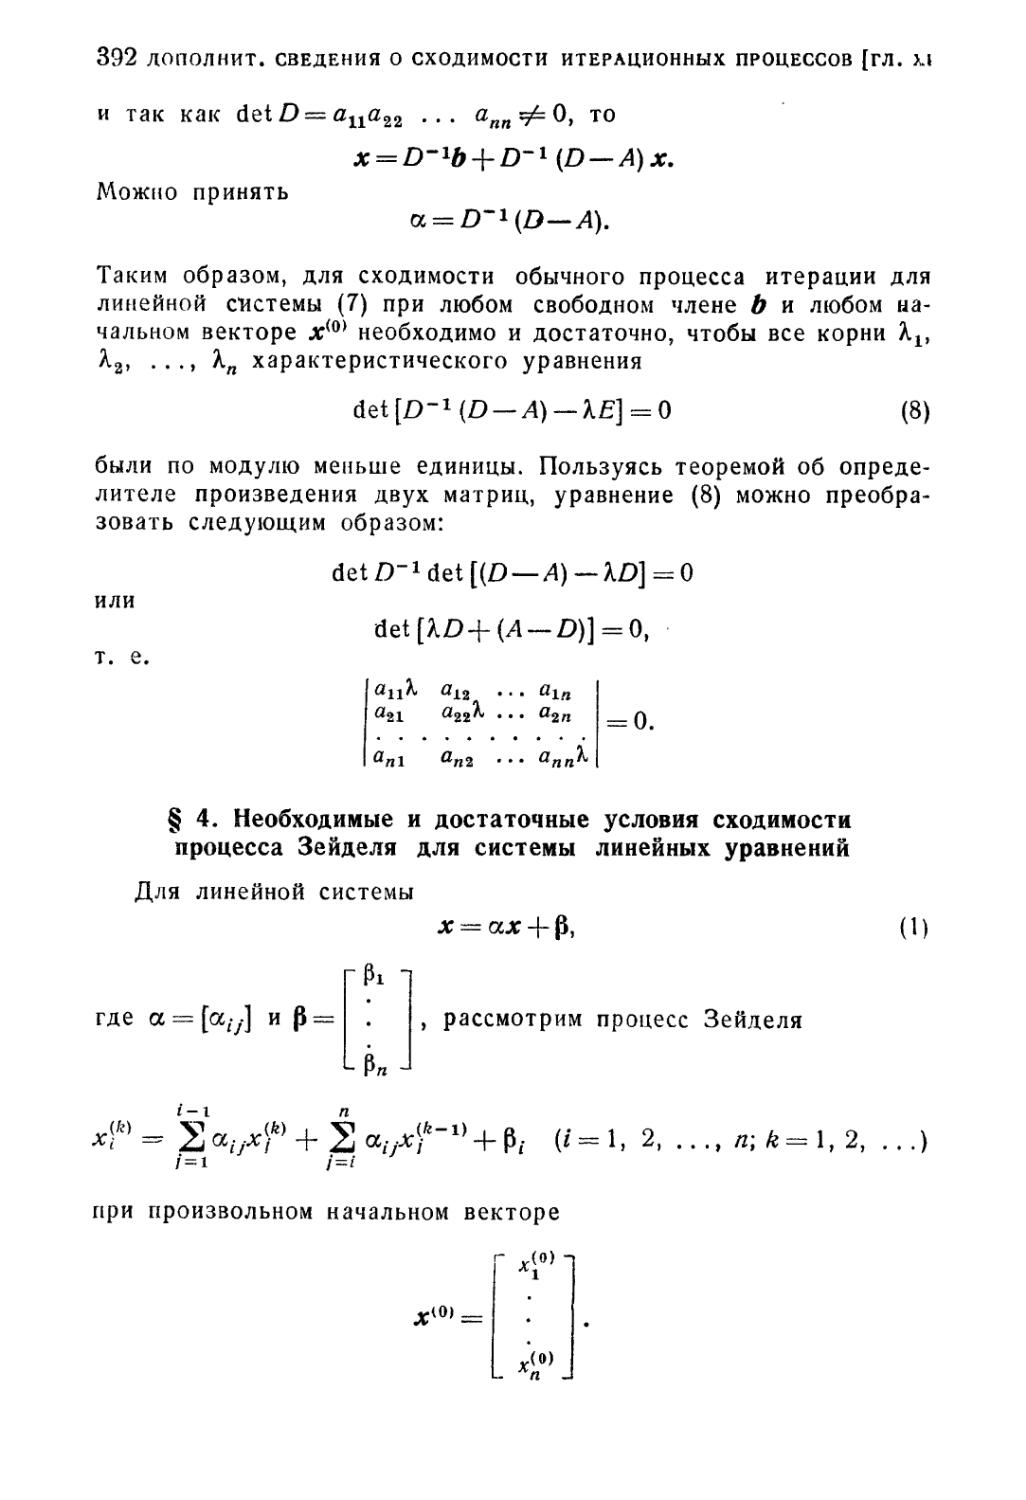 § 4. Необходимые и достаточные условия сходимости процесса Зейделя для системы линейных уравнений